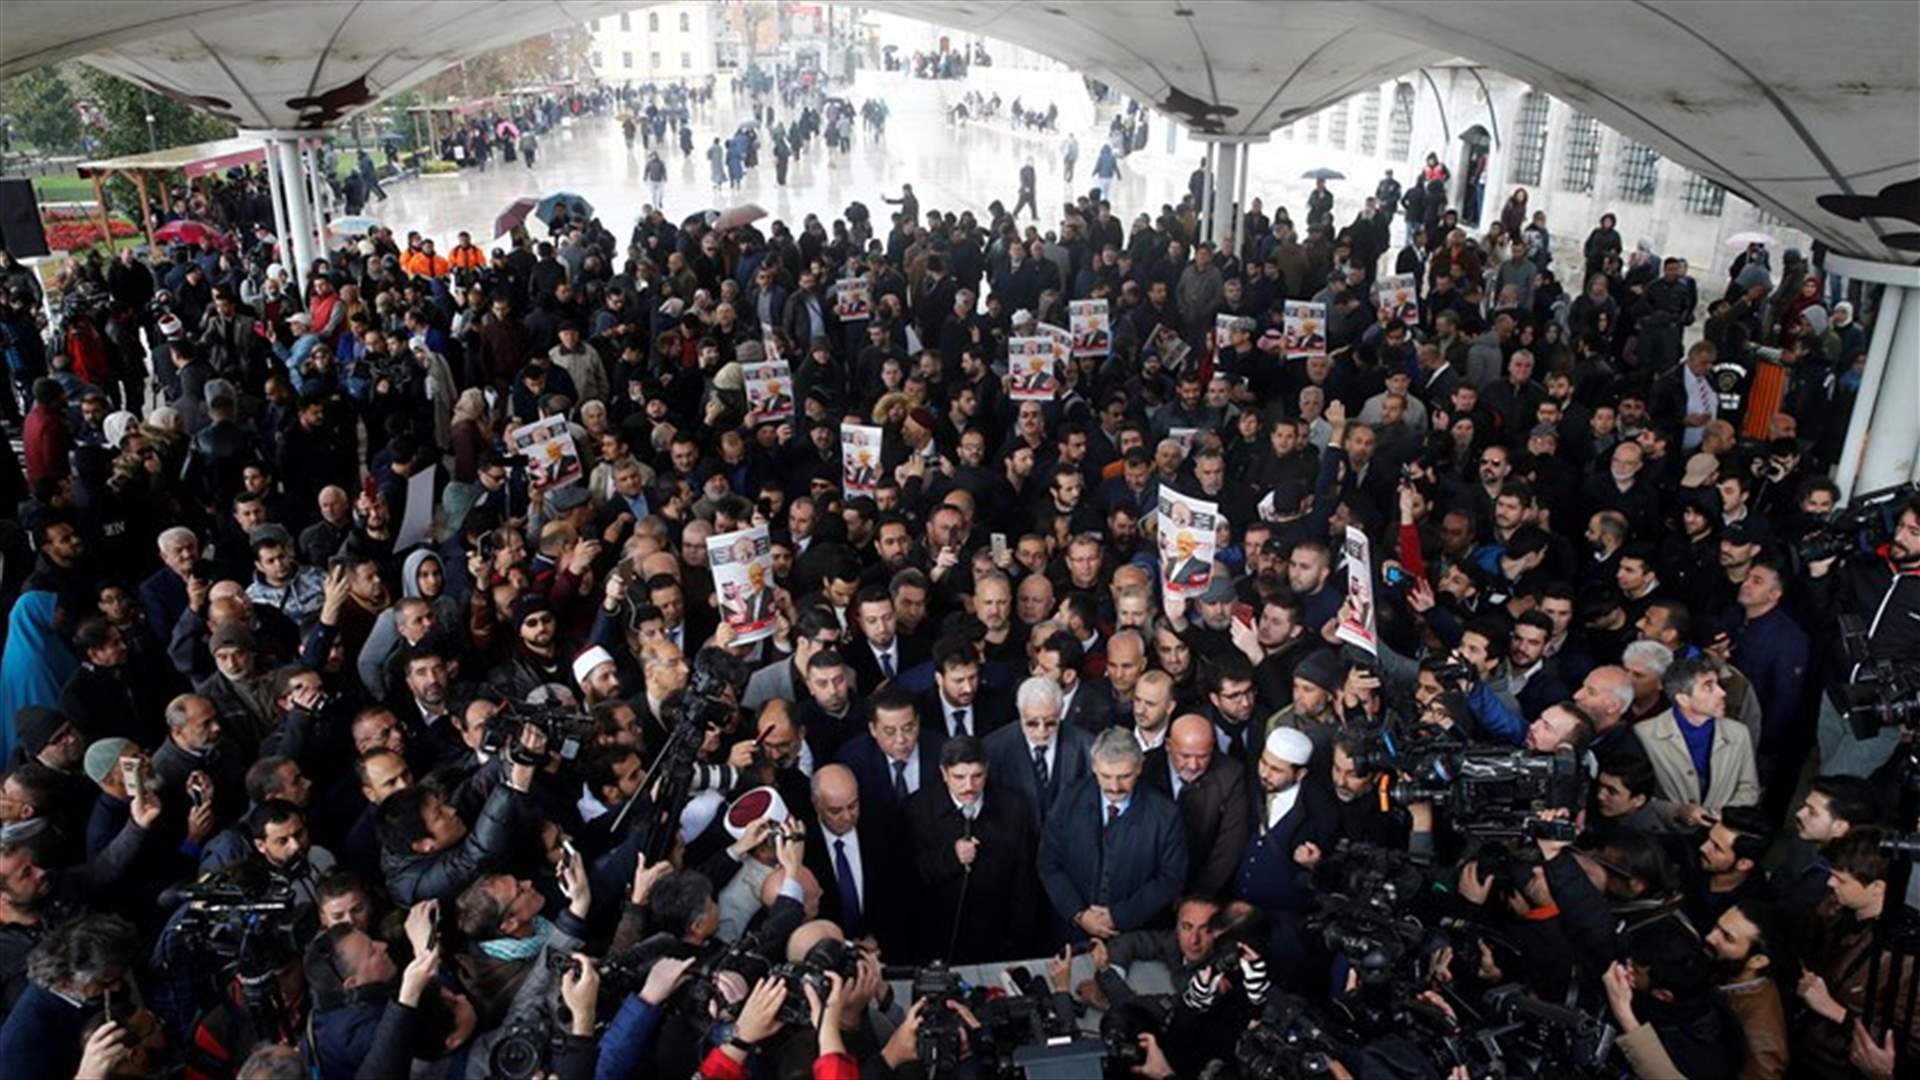 جنازة رمزية للصحافي السعودي جمال خاشقجي في اسطنبول (صور)